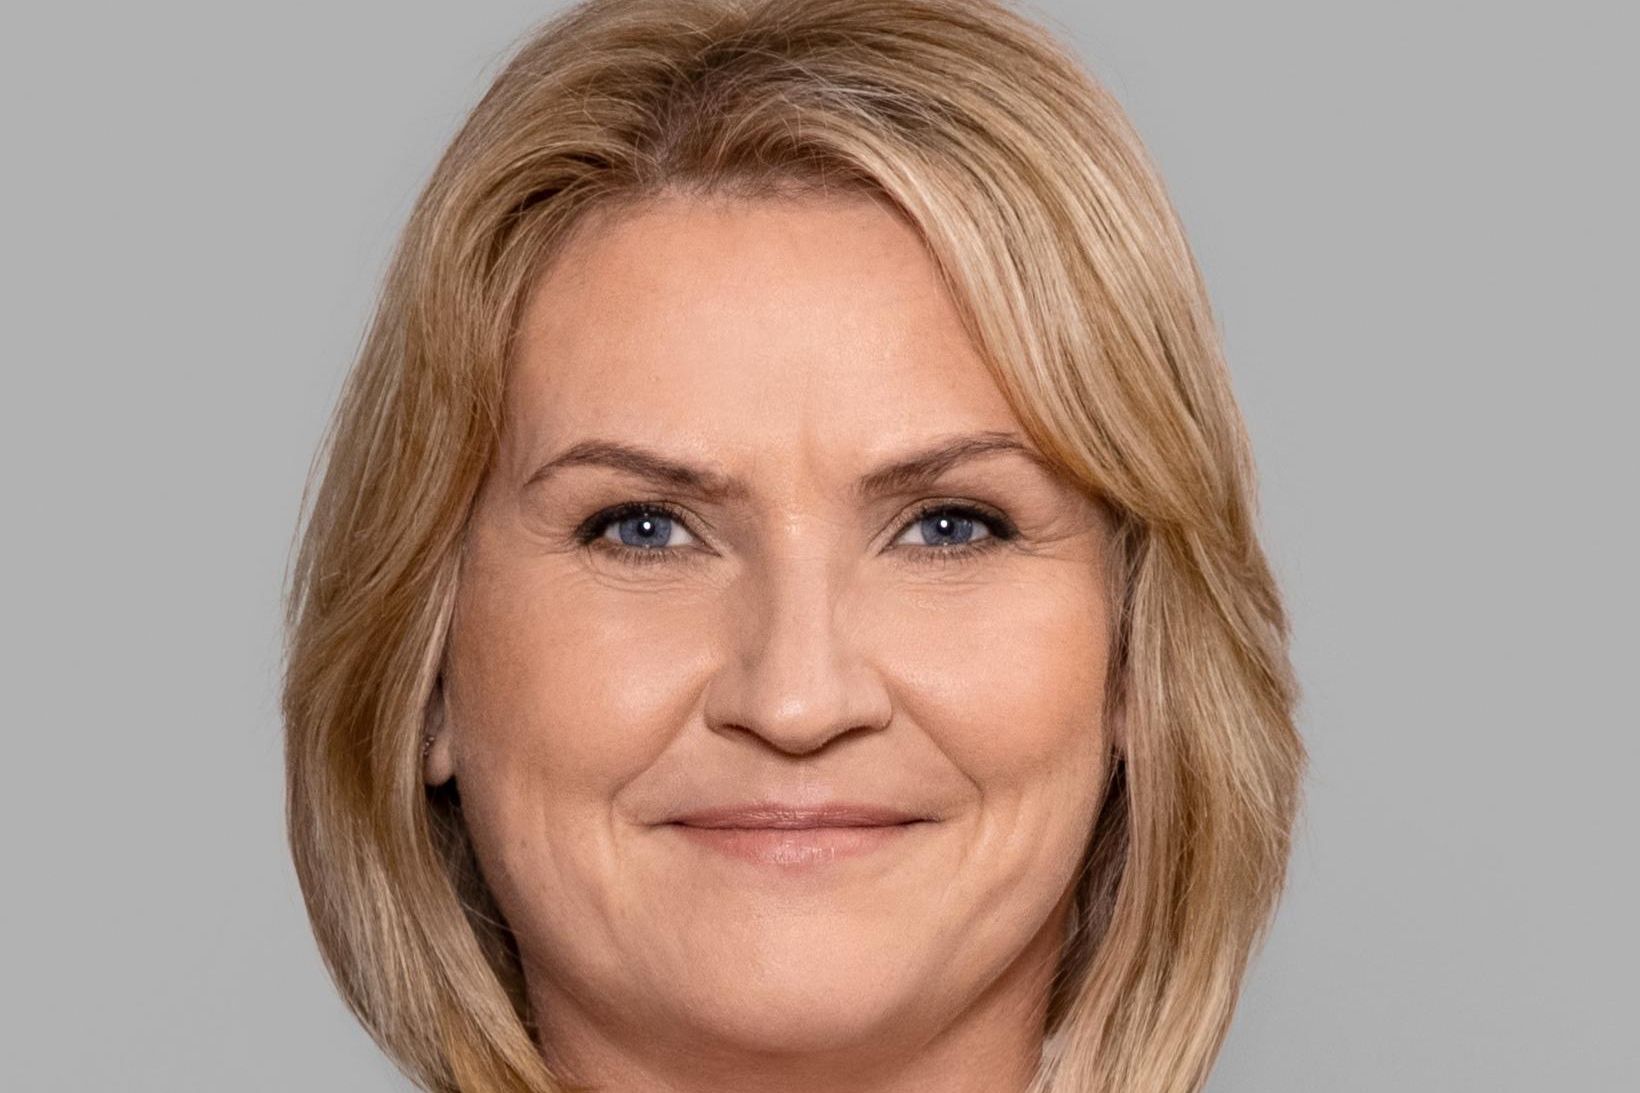 Karen Elísabet Halldórsdóttir.